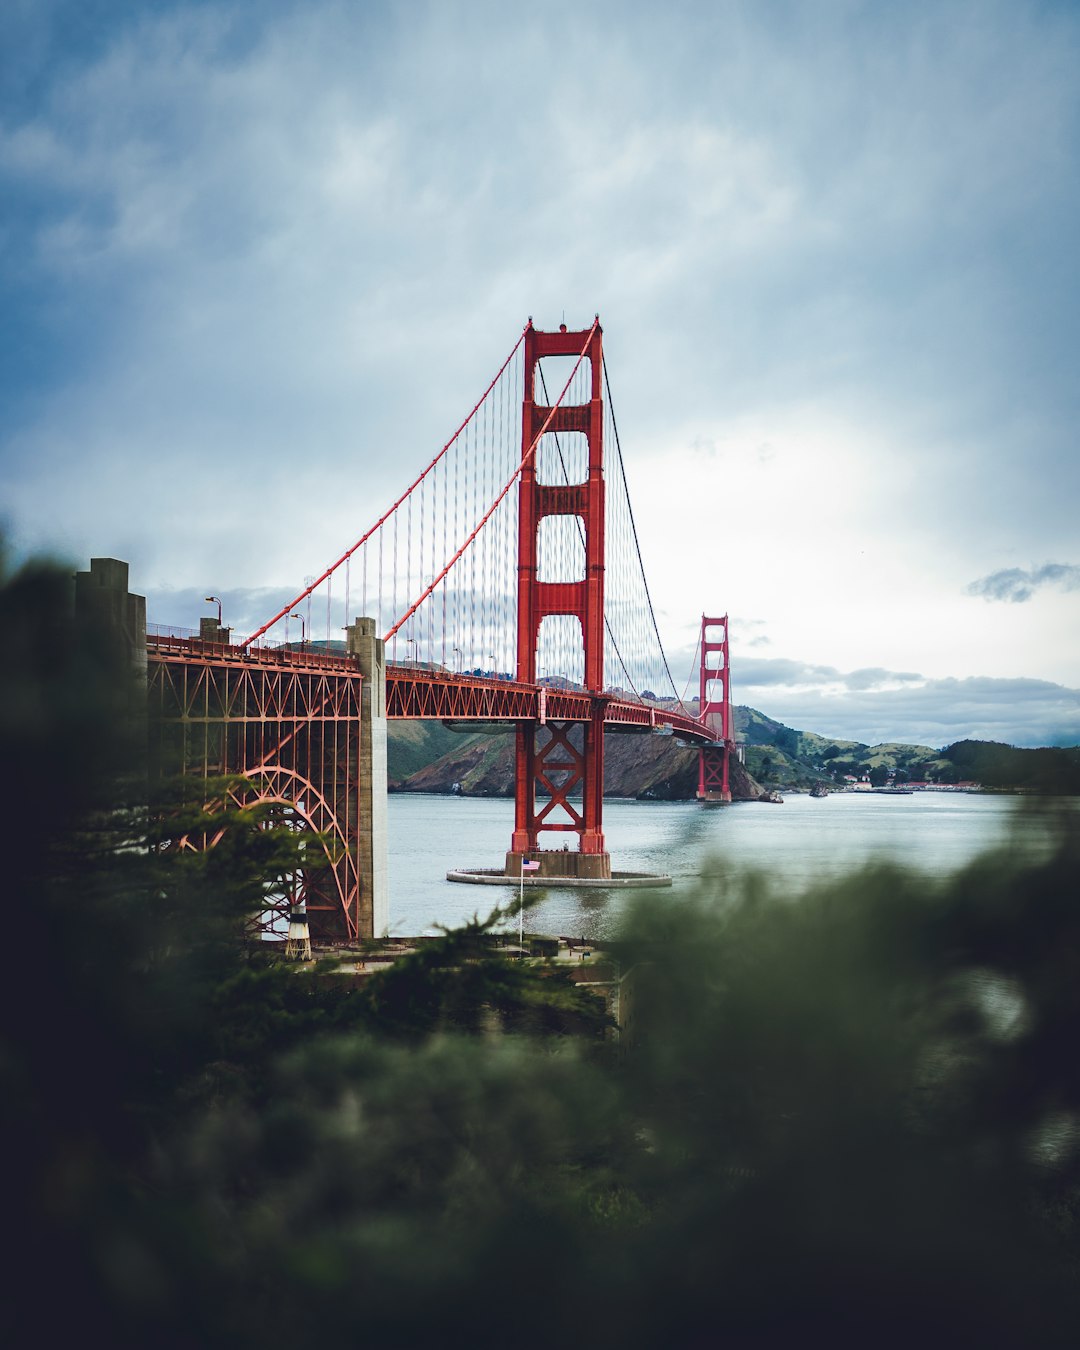 Golden Gate Bridge at San Francisco, California during daytime